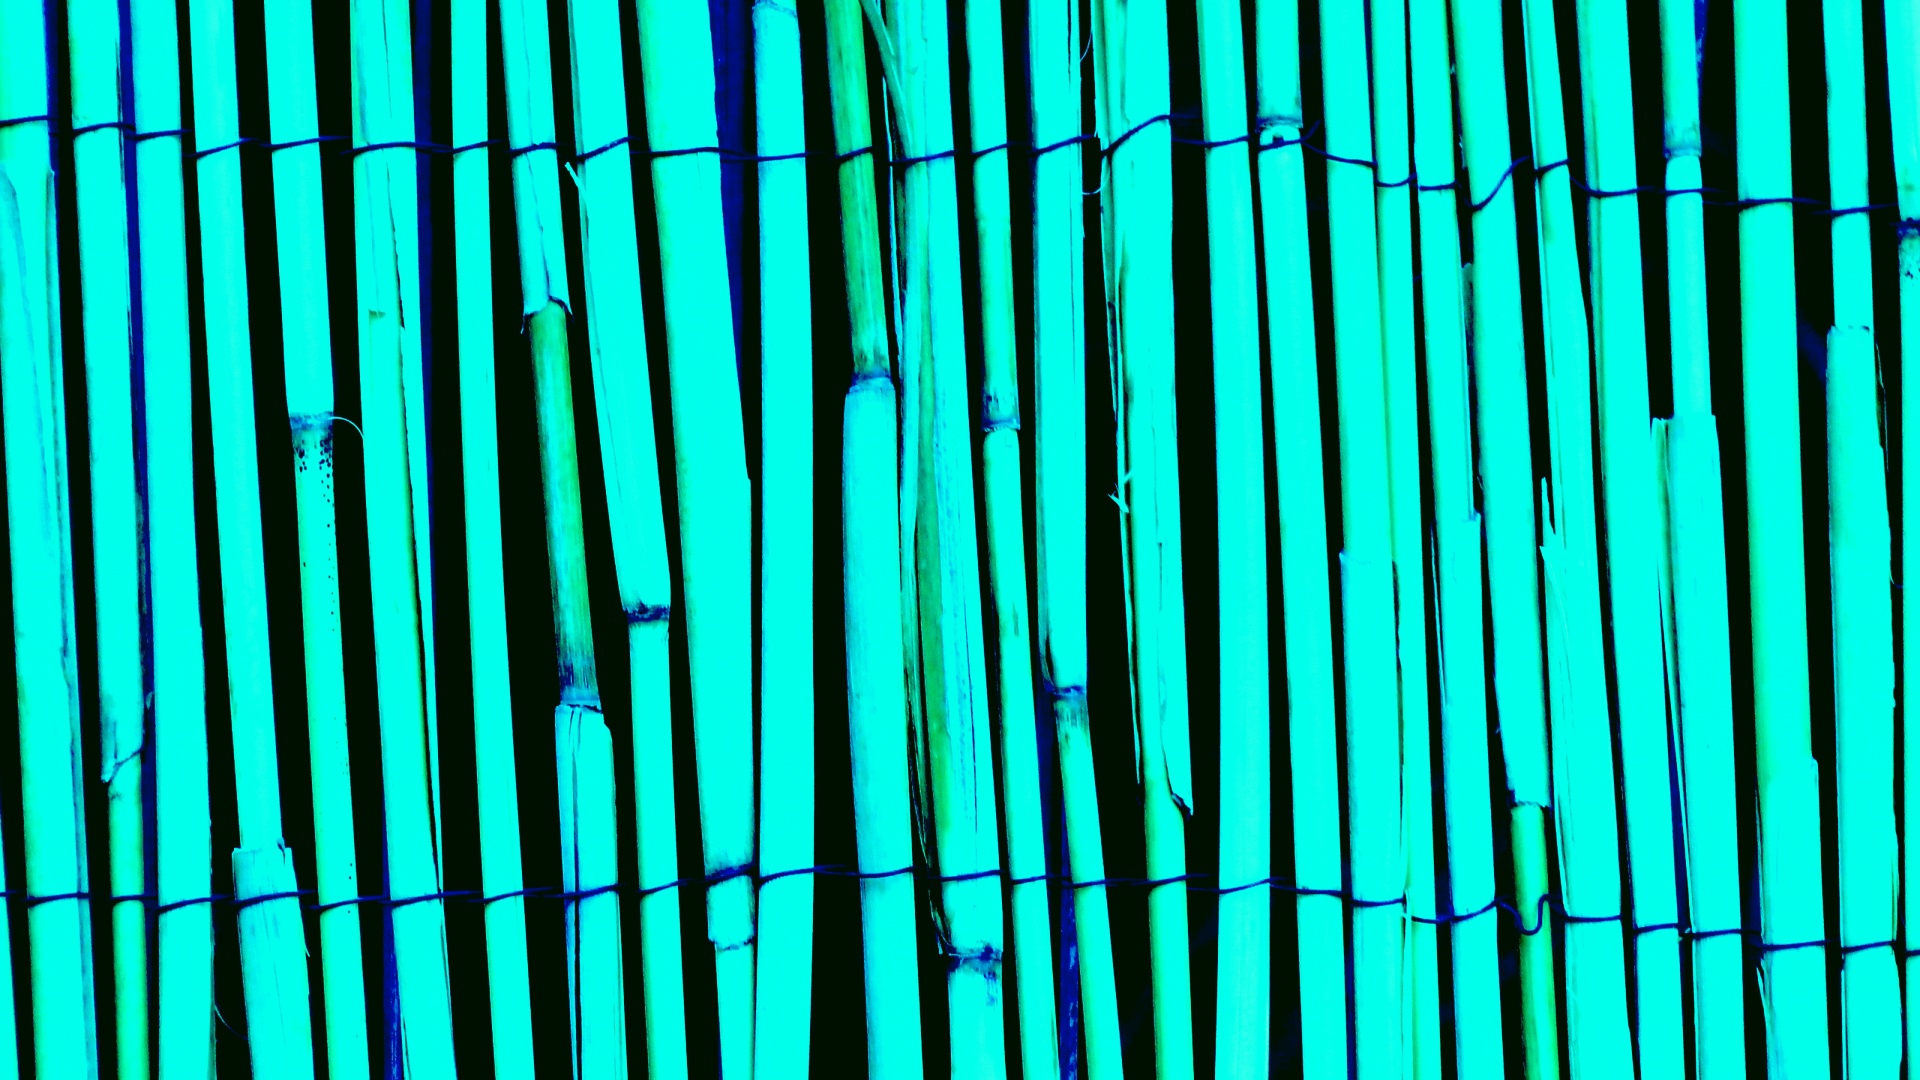 Turquoise Bamboo Wood Background